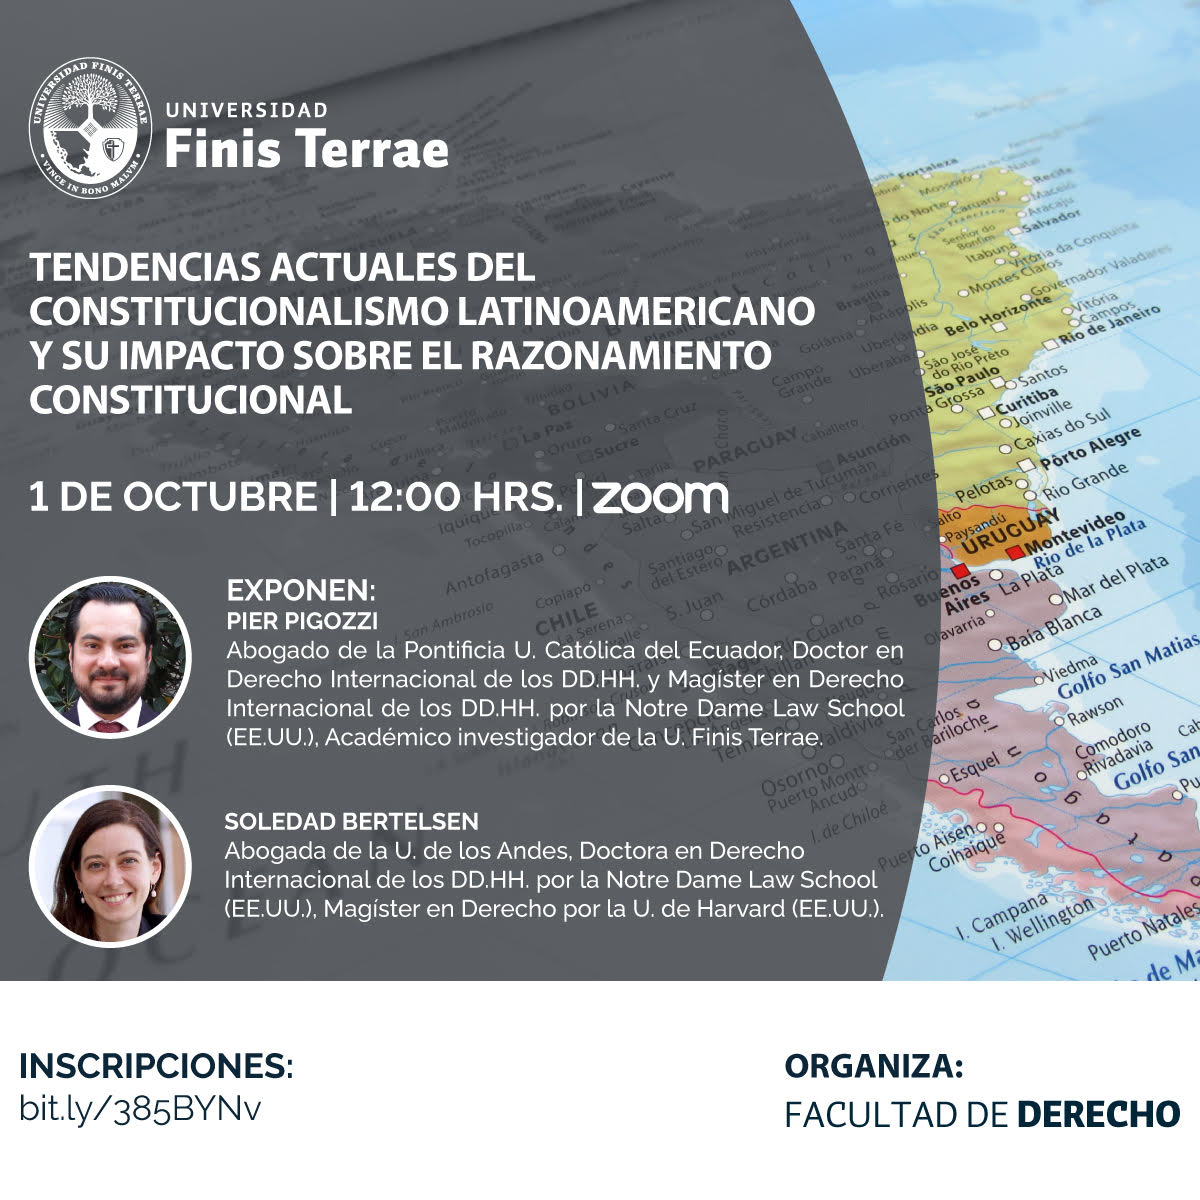 Facultad de Derecho U. Finis Terrae organiza conferencia “Tendencias actuales del constitucionalismo latinoamericano y su impacto sobre el razonamiento constitucional”.